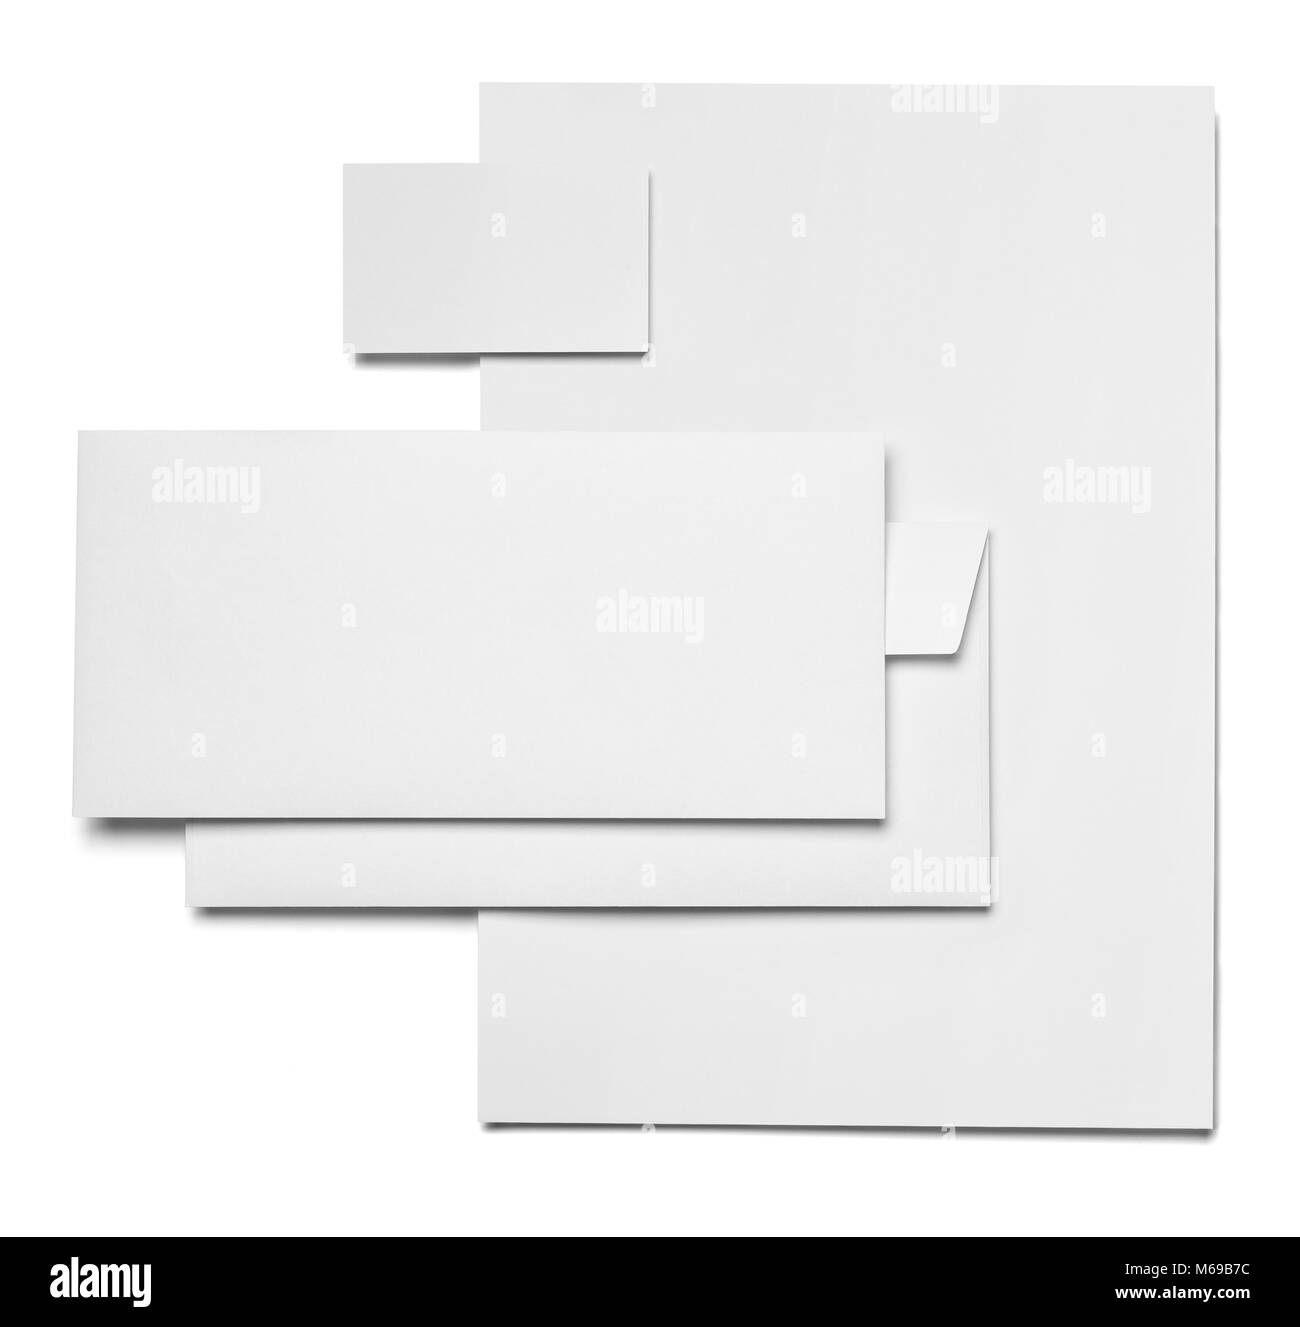 Briefumschlag, Papier und Business card Template auf weißem Hintergrund Stockfoto